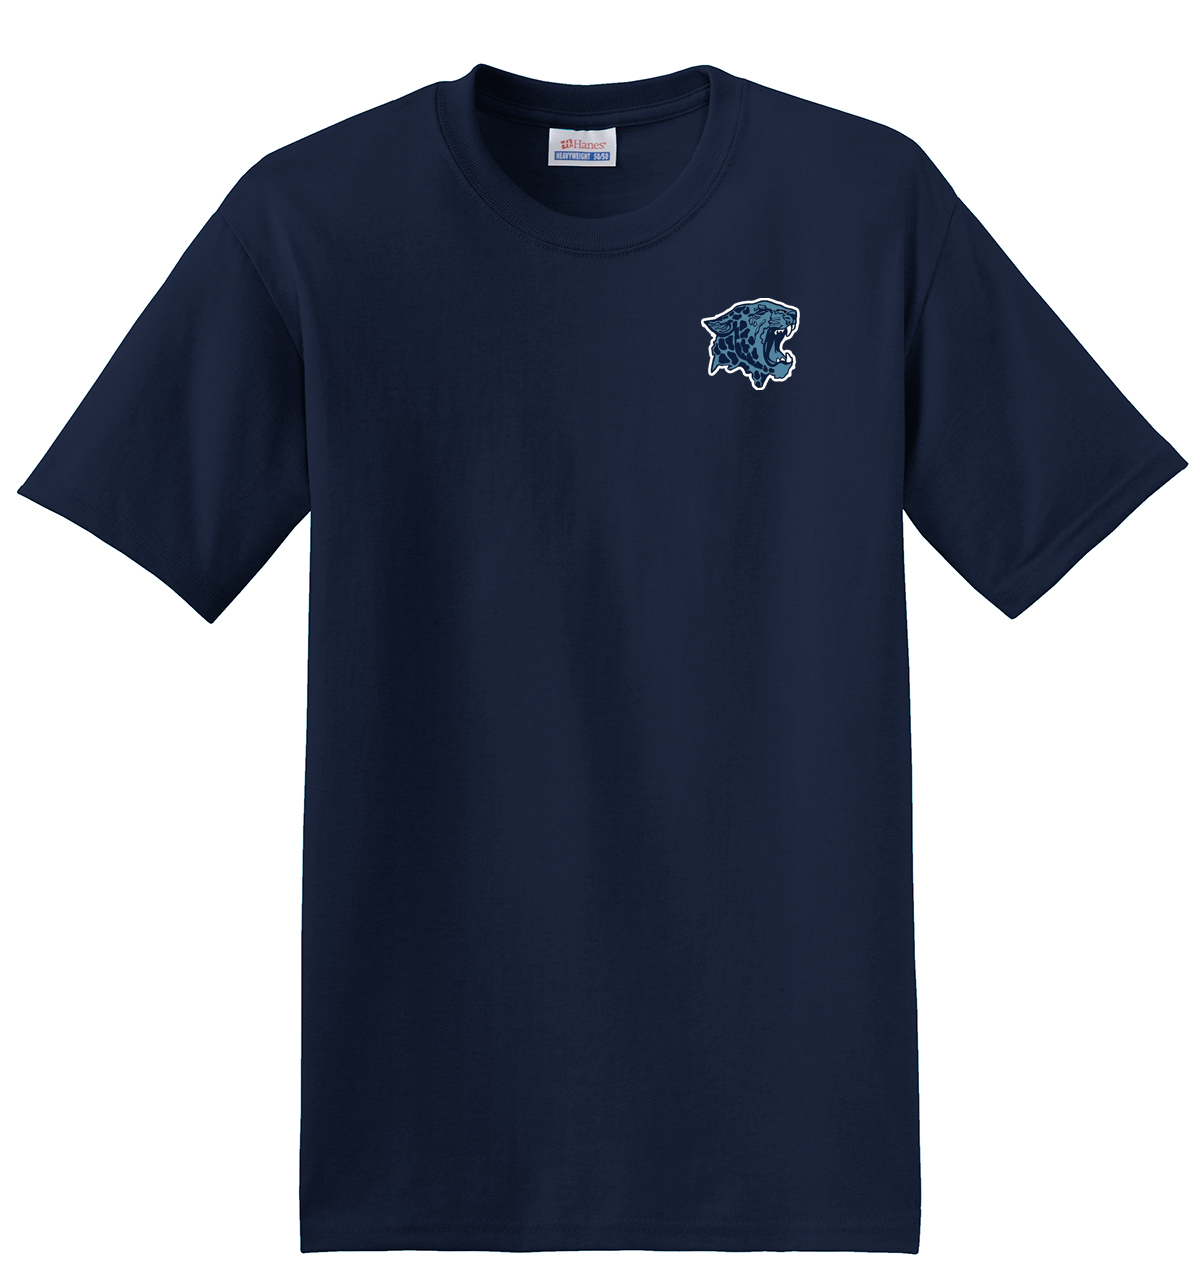 Louisville High School Lacrosse T-Shirt